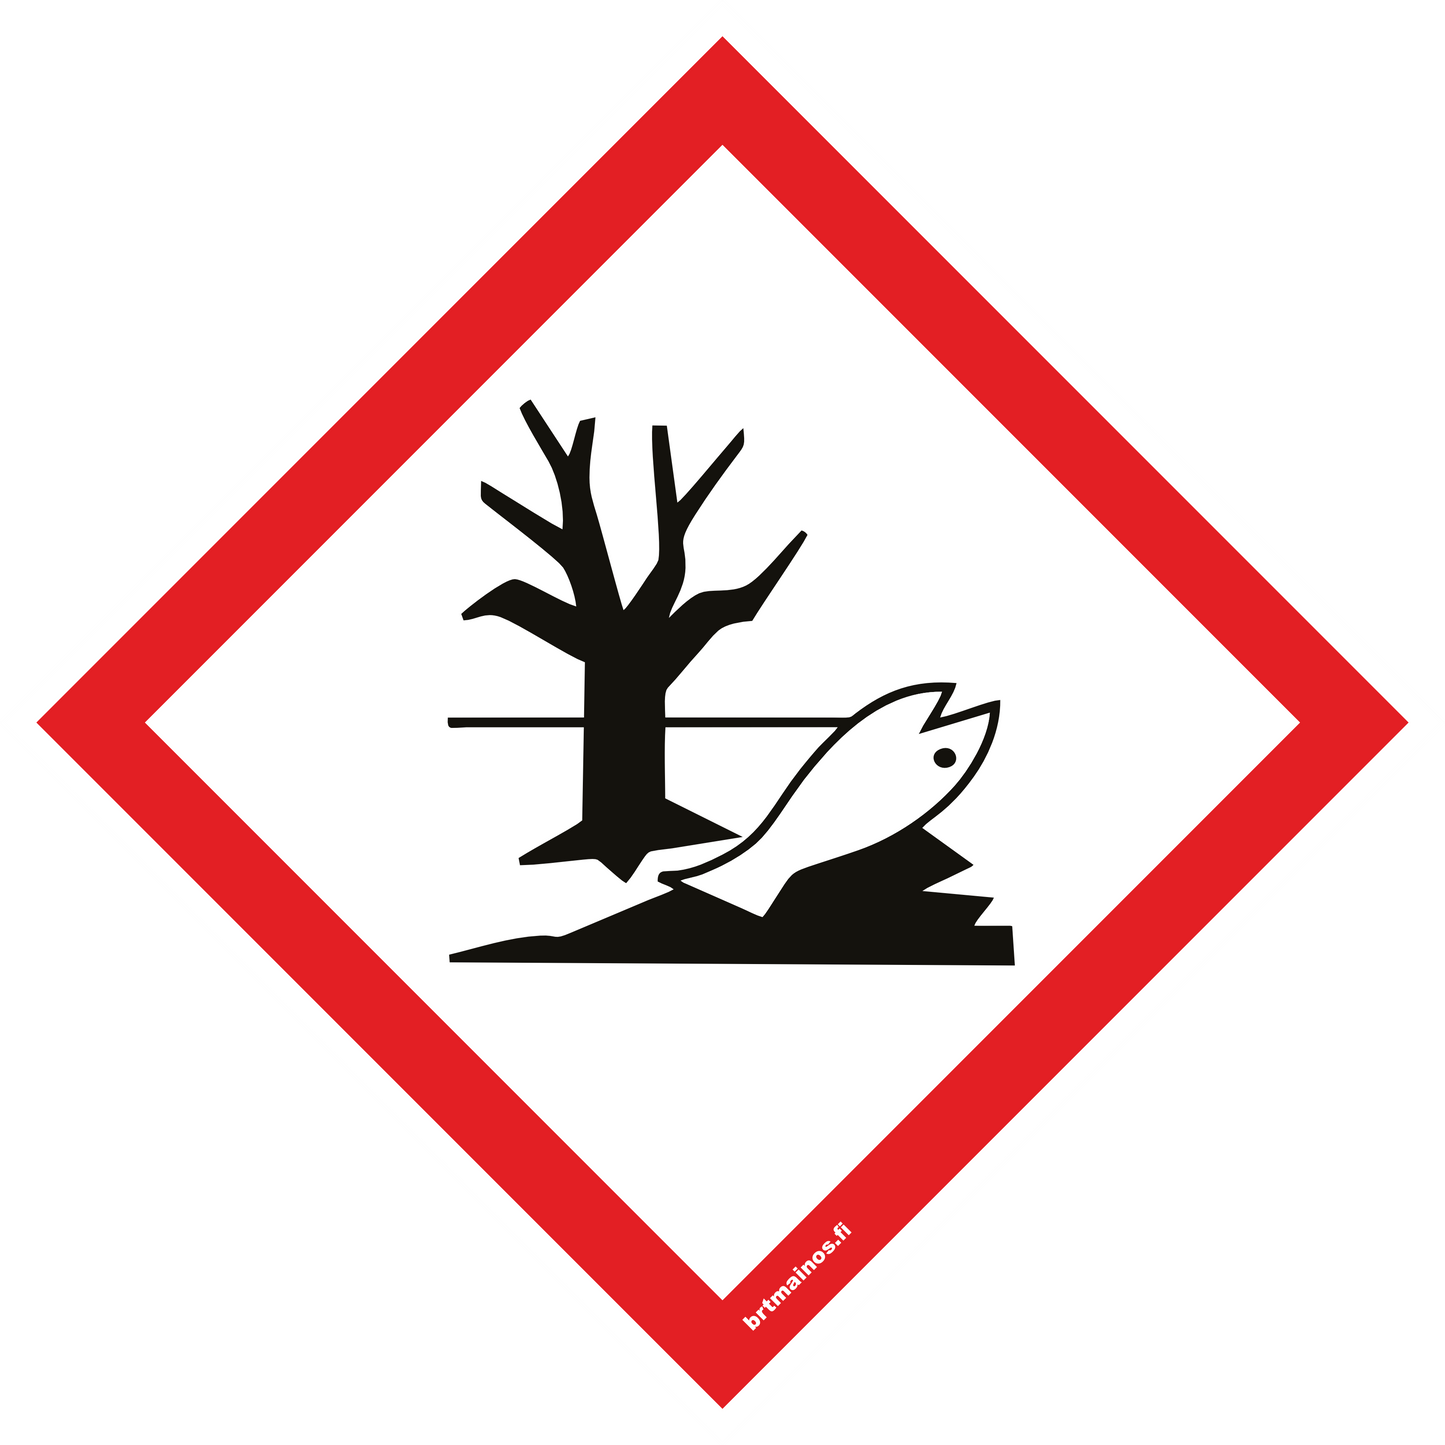 Ympäristölle vaarallinen (GHS 09)